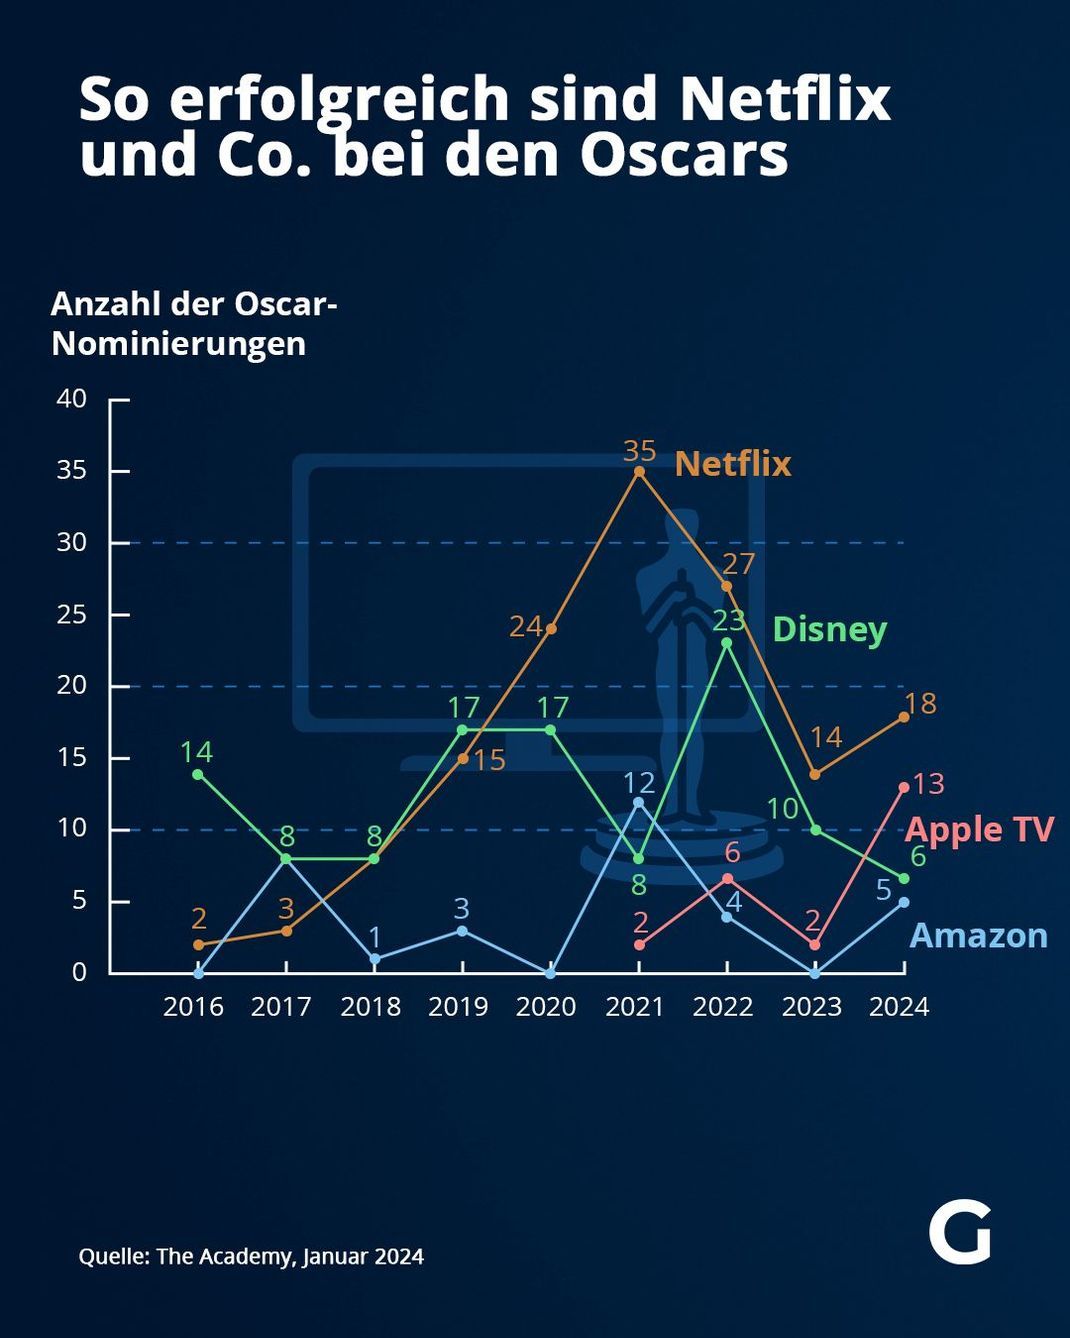 Oscarnominierungen der Streaming-Anbieter von 2015 bis 2024.